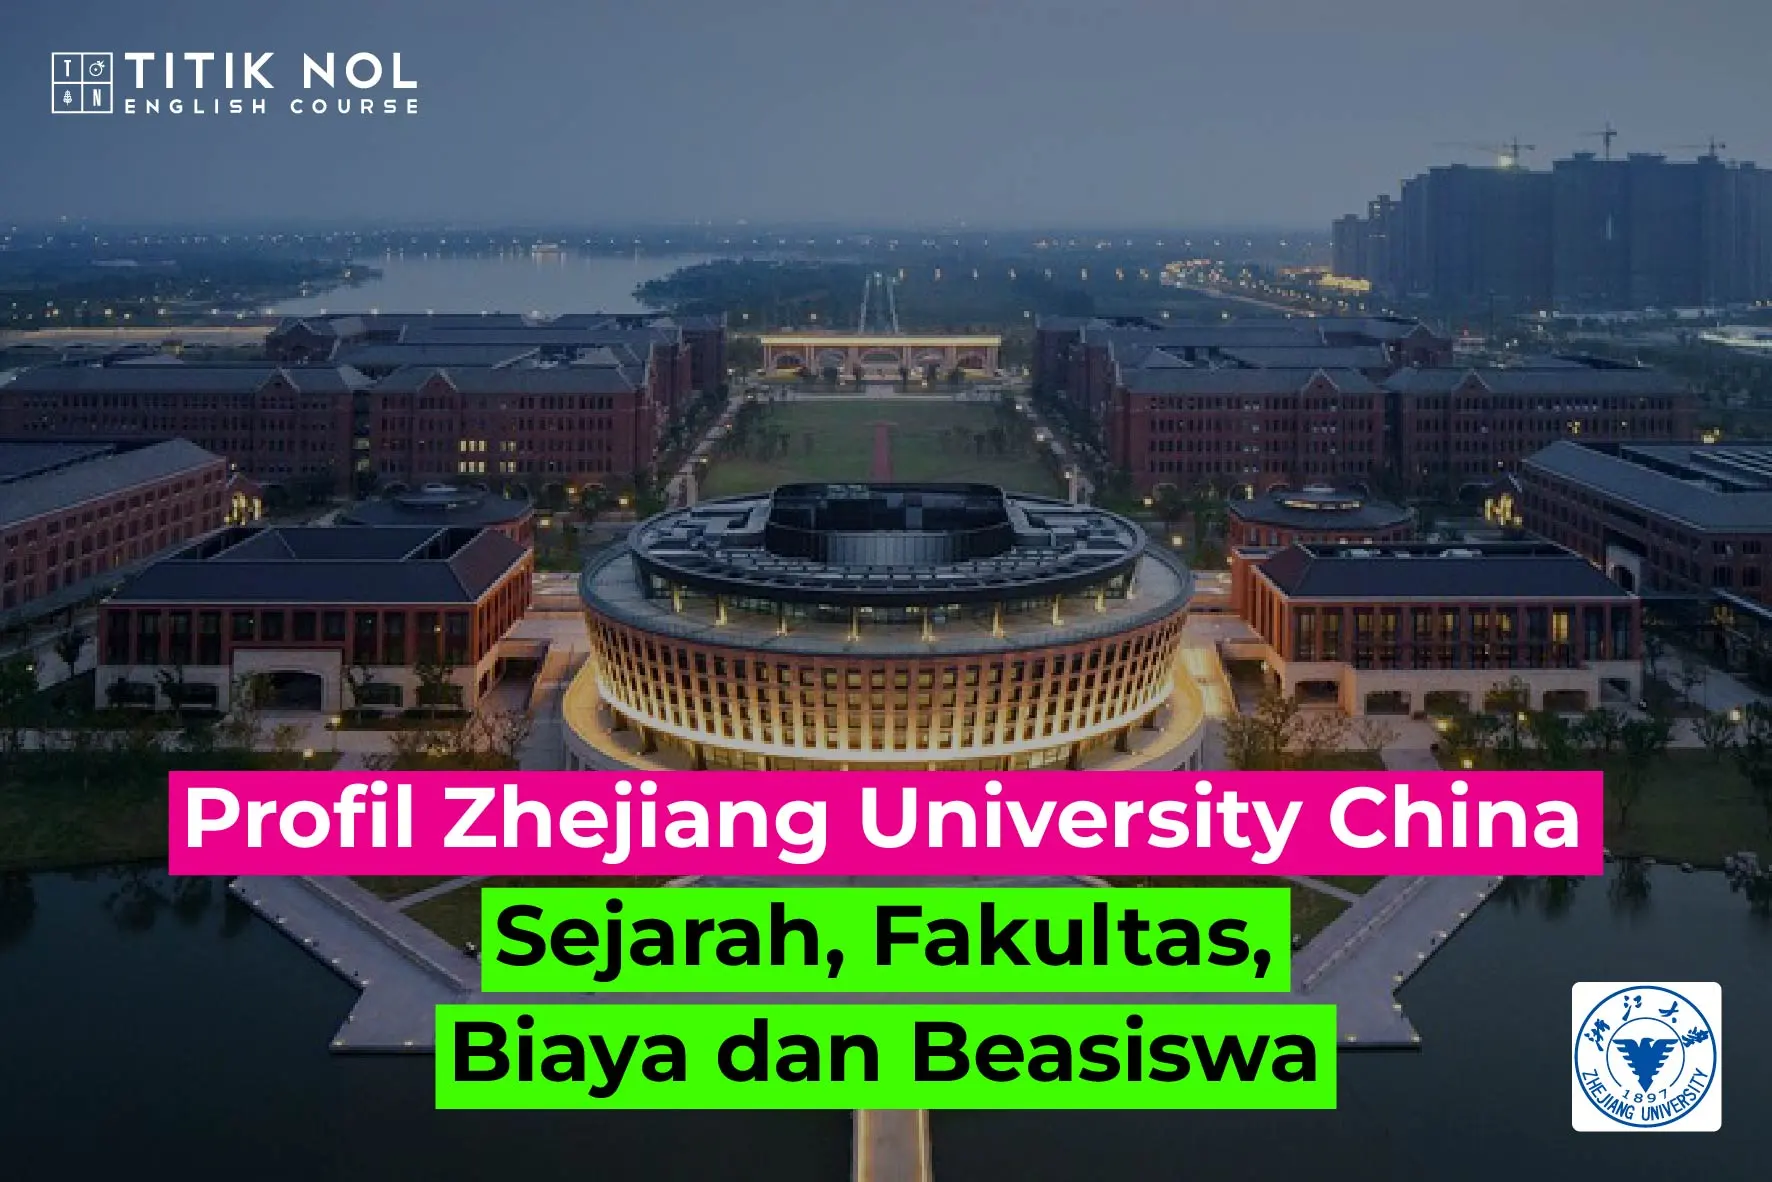 zhejiang university china